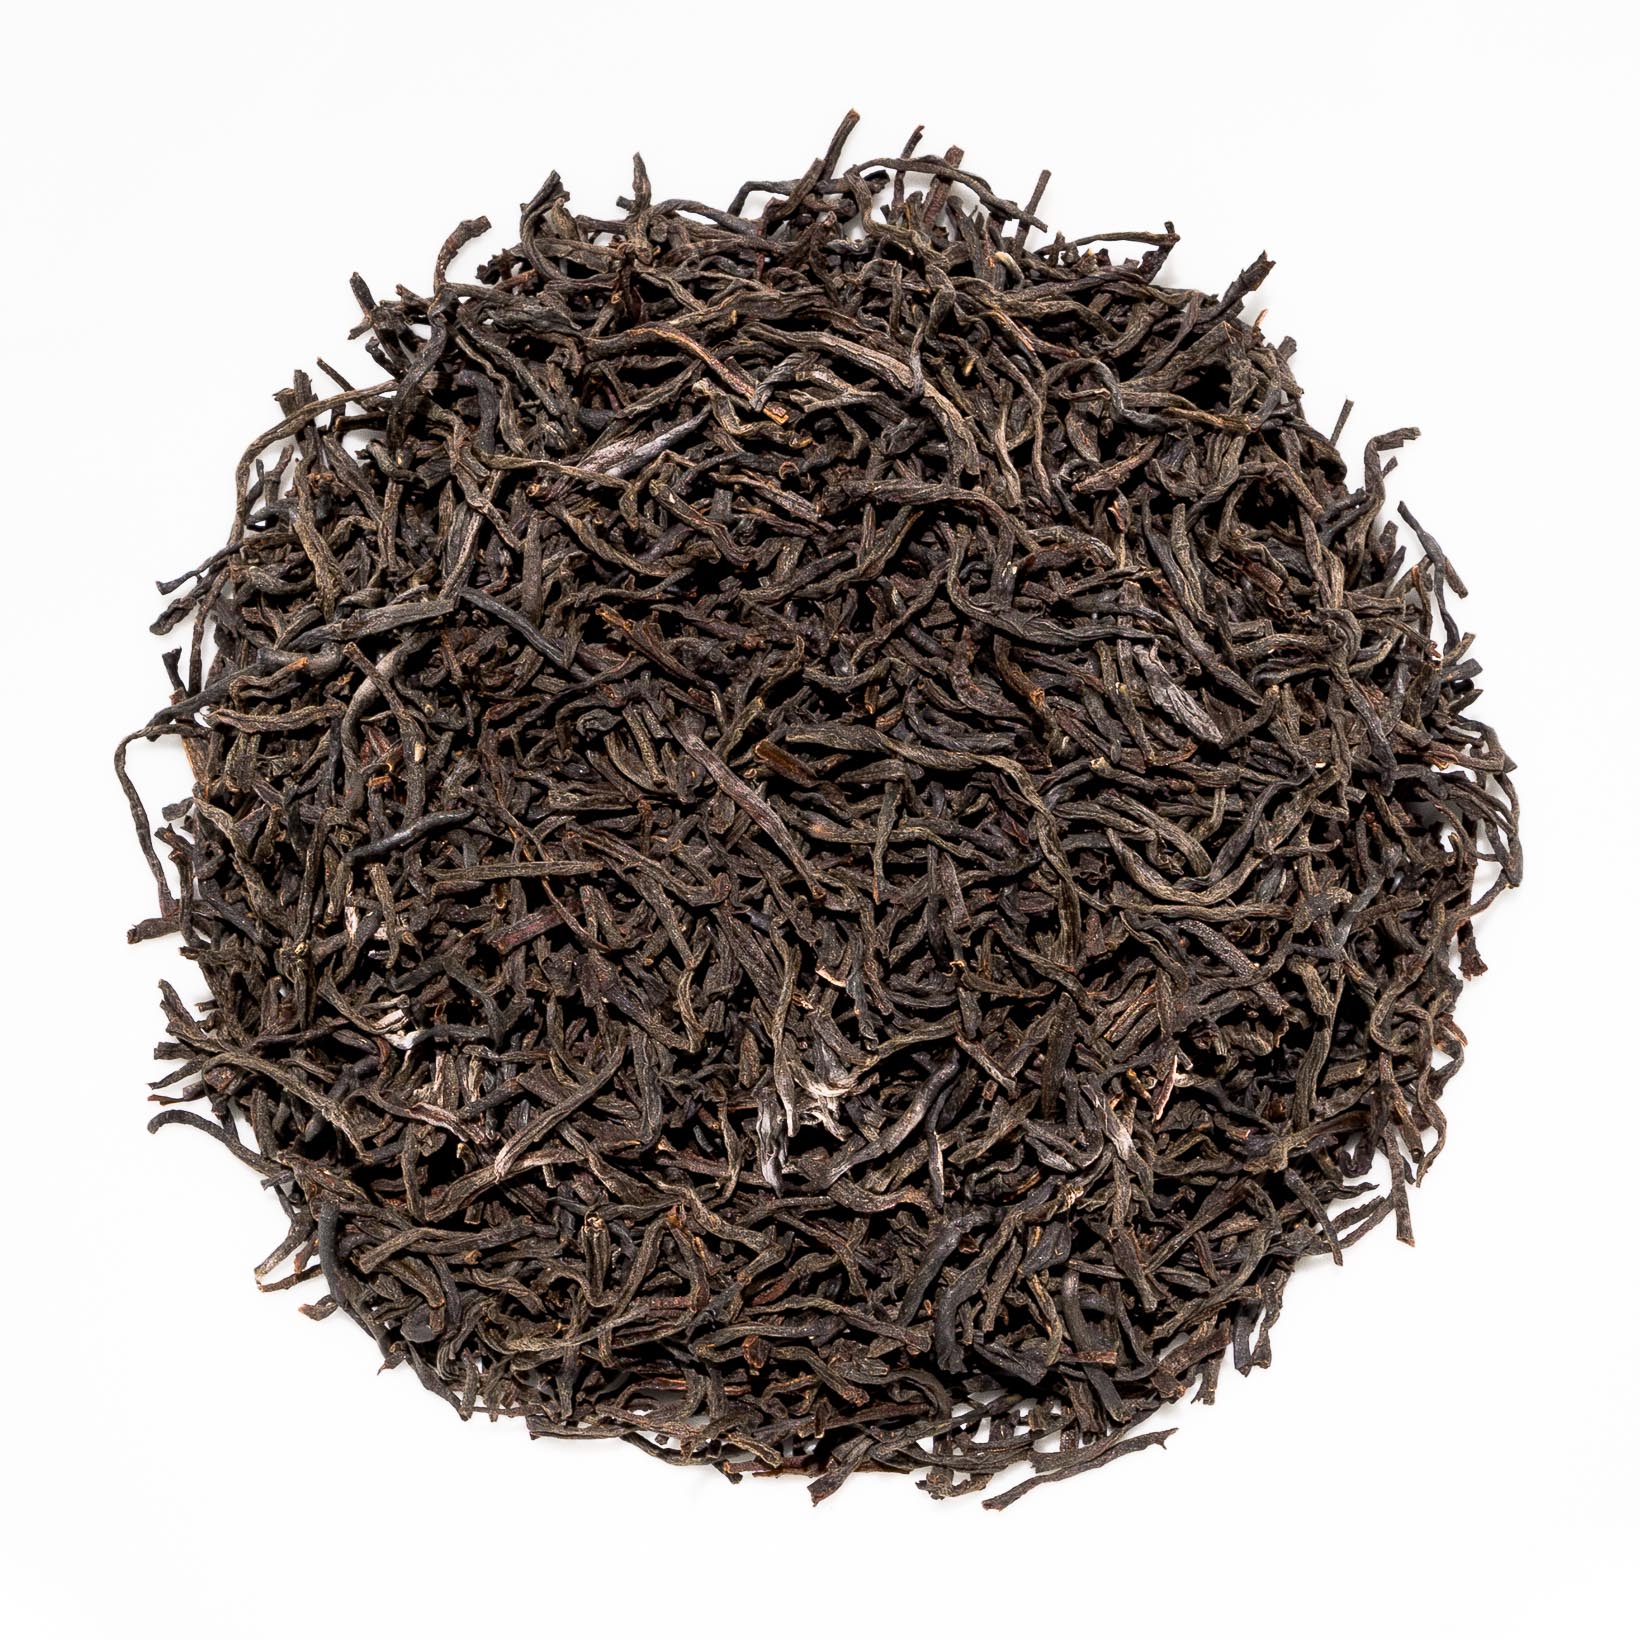 Цейлонский чай из шри